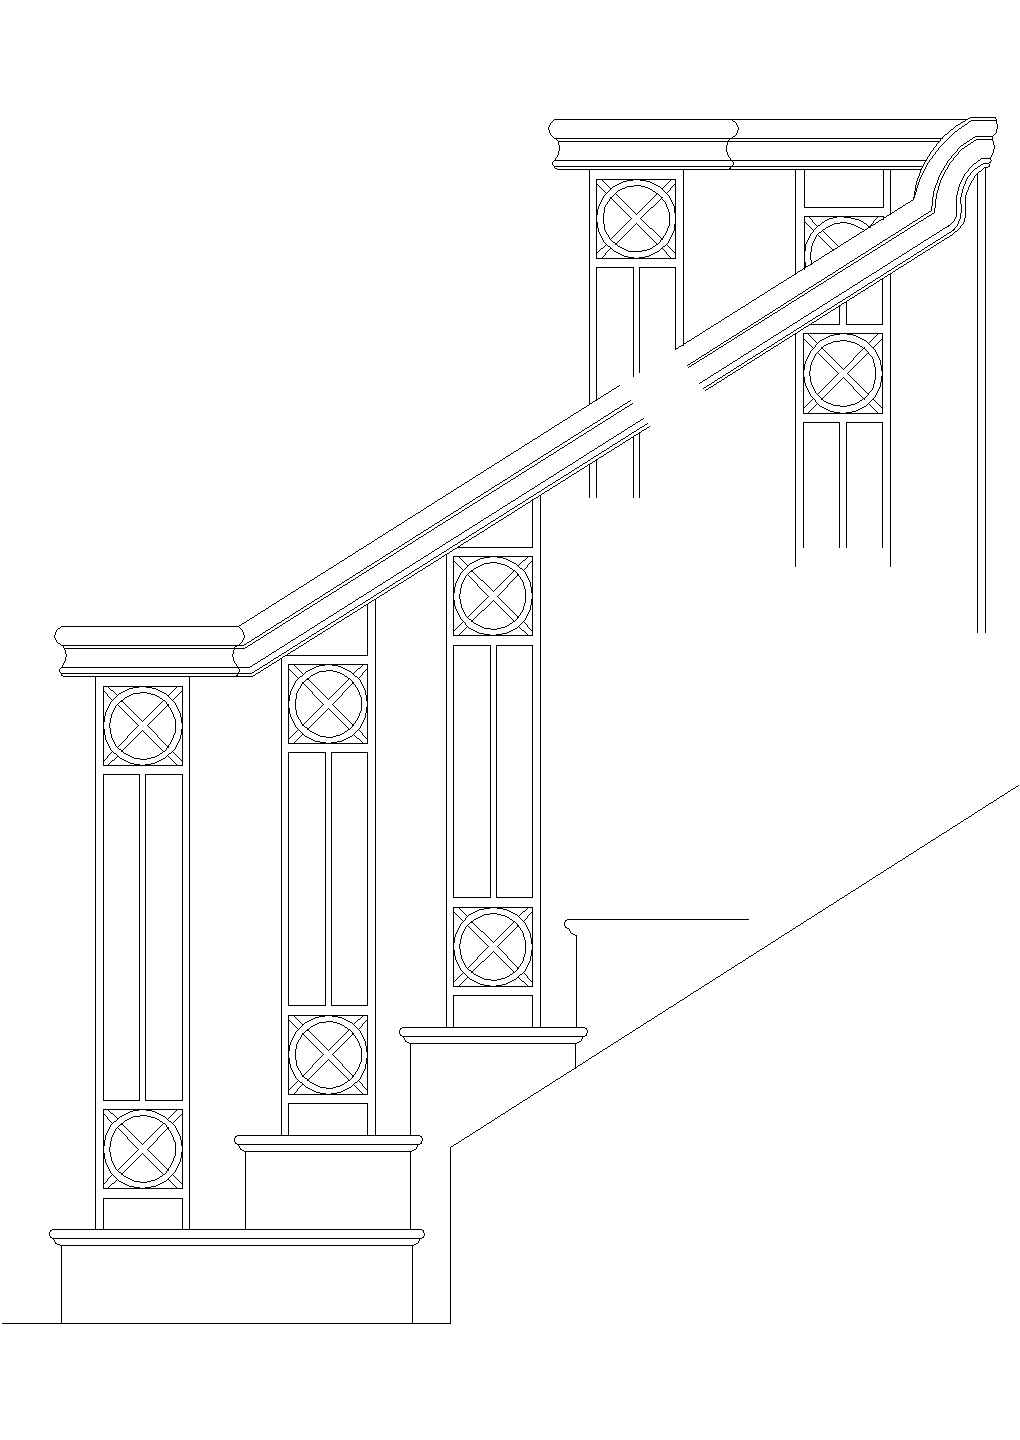 北京万科小区某私人别墅内部楼梯扶手设计CAD施工图